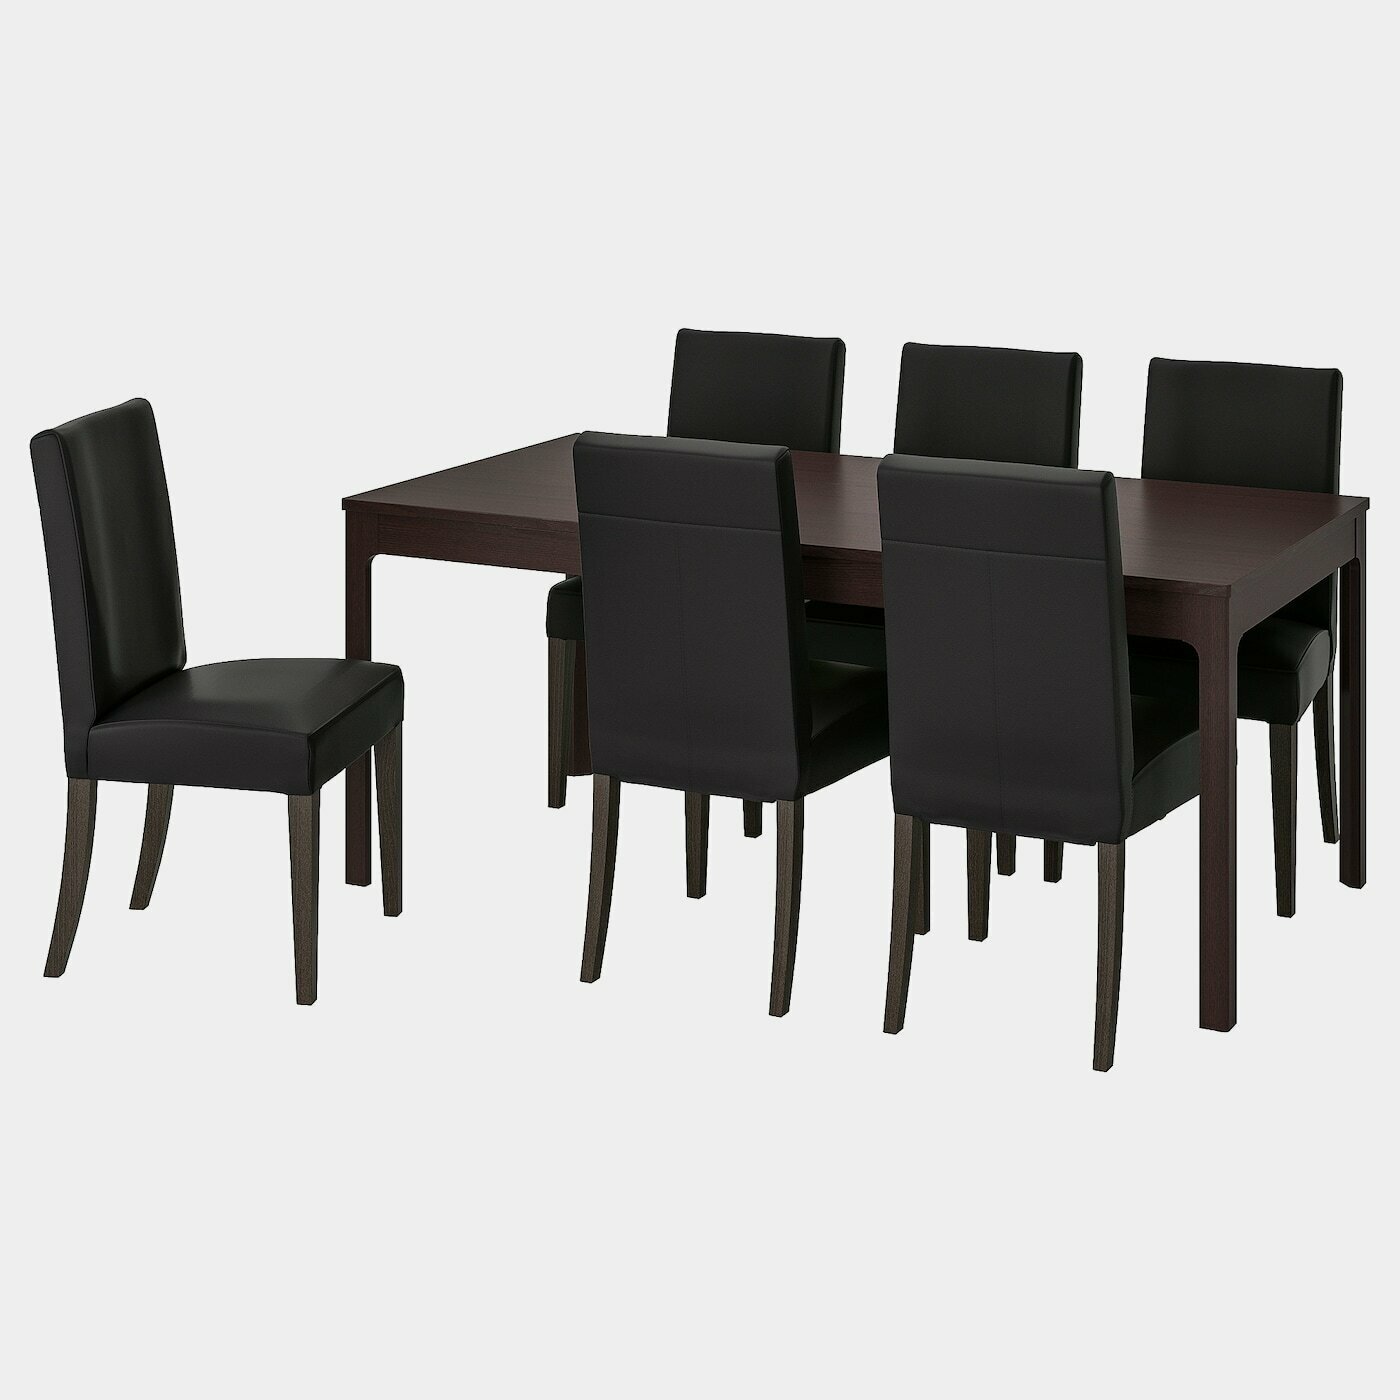 EKEDALEN / HENRIKSDAL Tisch und 6 Stühle  - Essplatzgruppe - Möbel Ideen für dein Zuhause von Home Trends. Möbel Trends von Social Media Influencer für dein Skandi Zuhause.